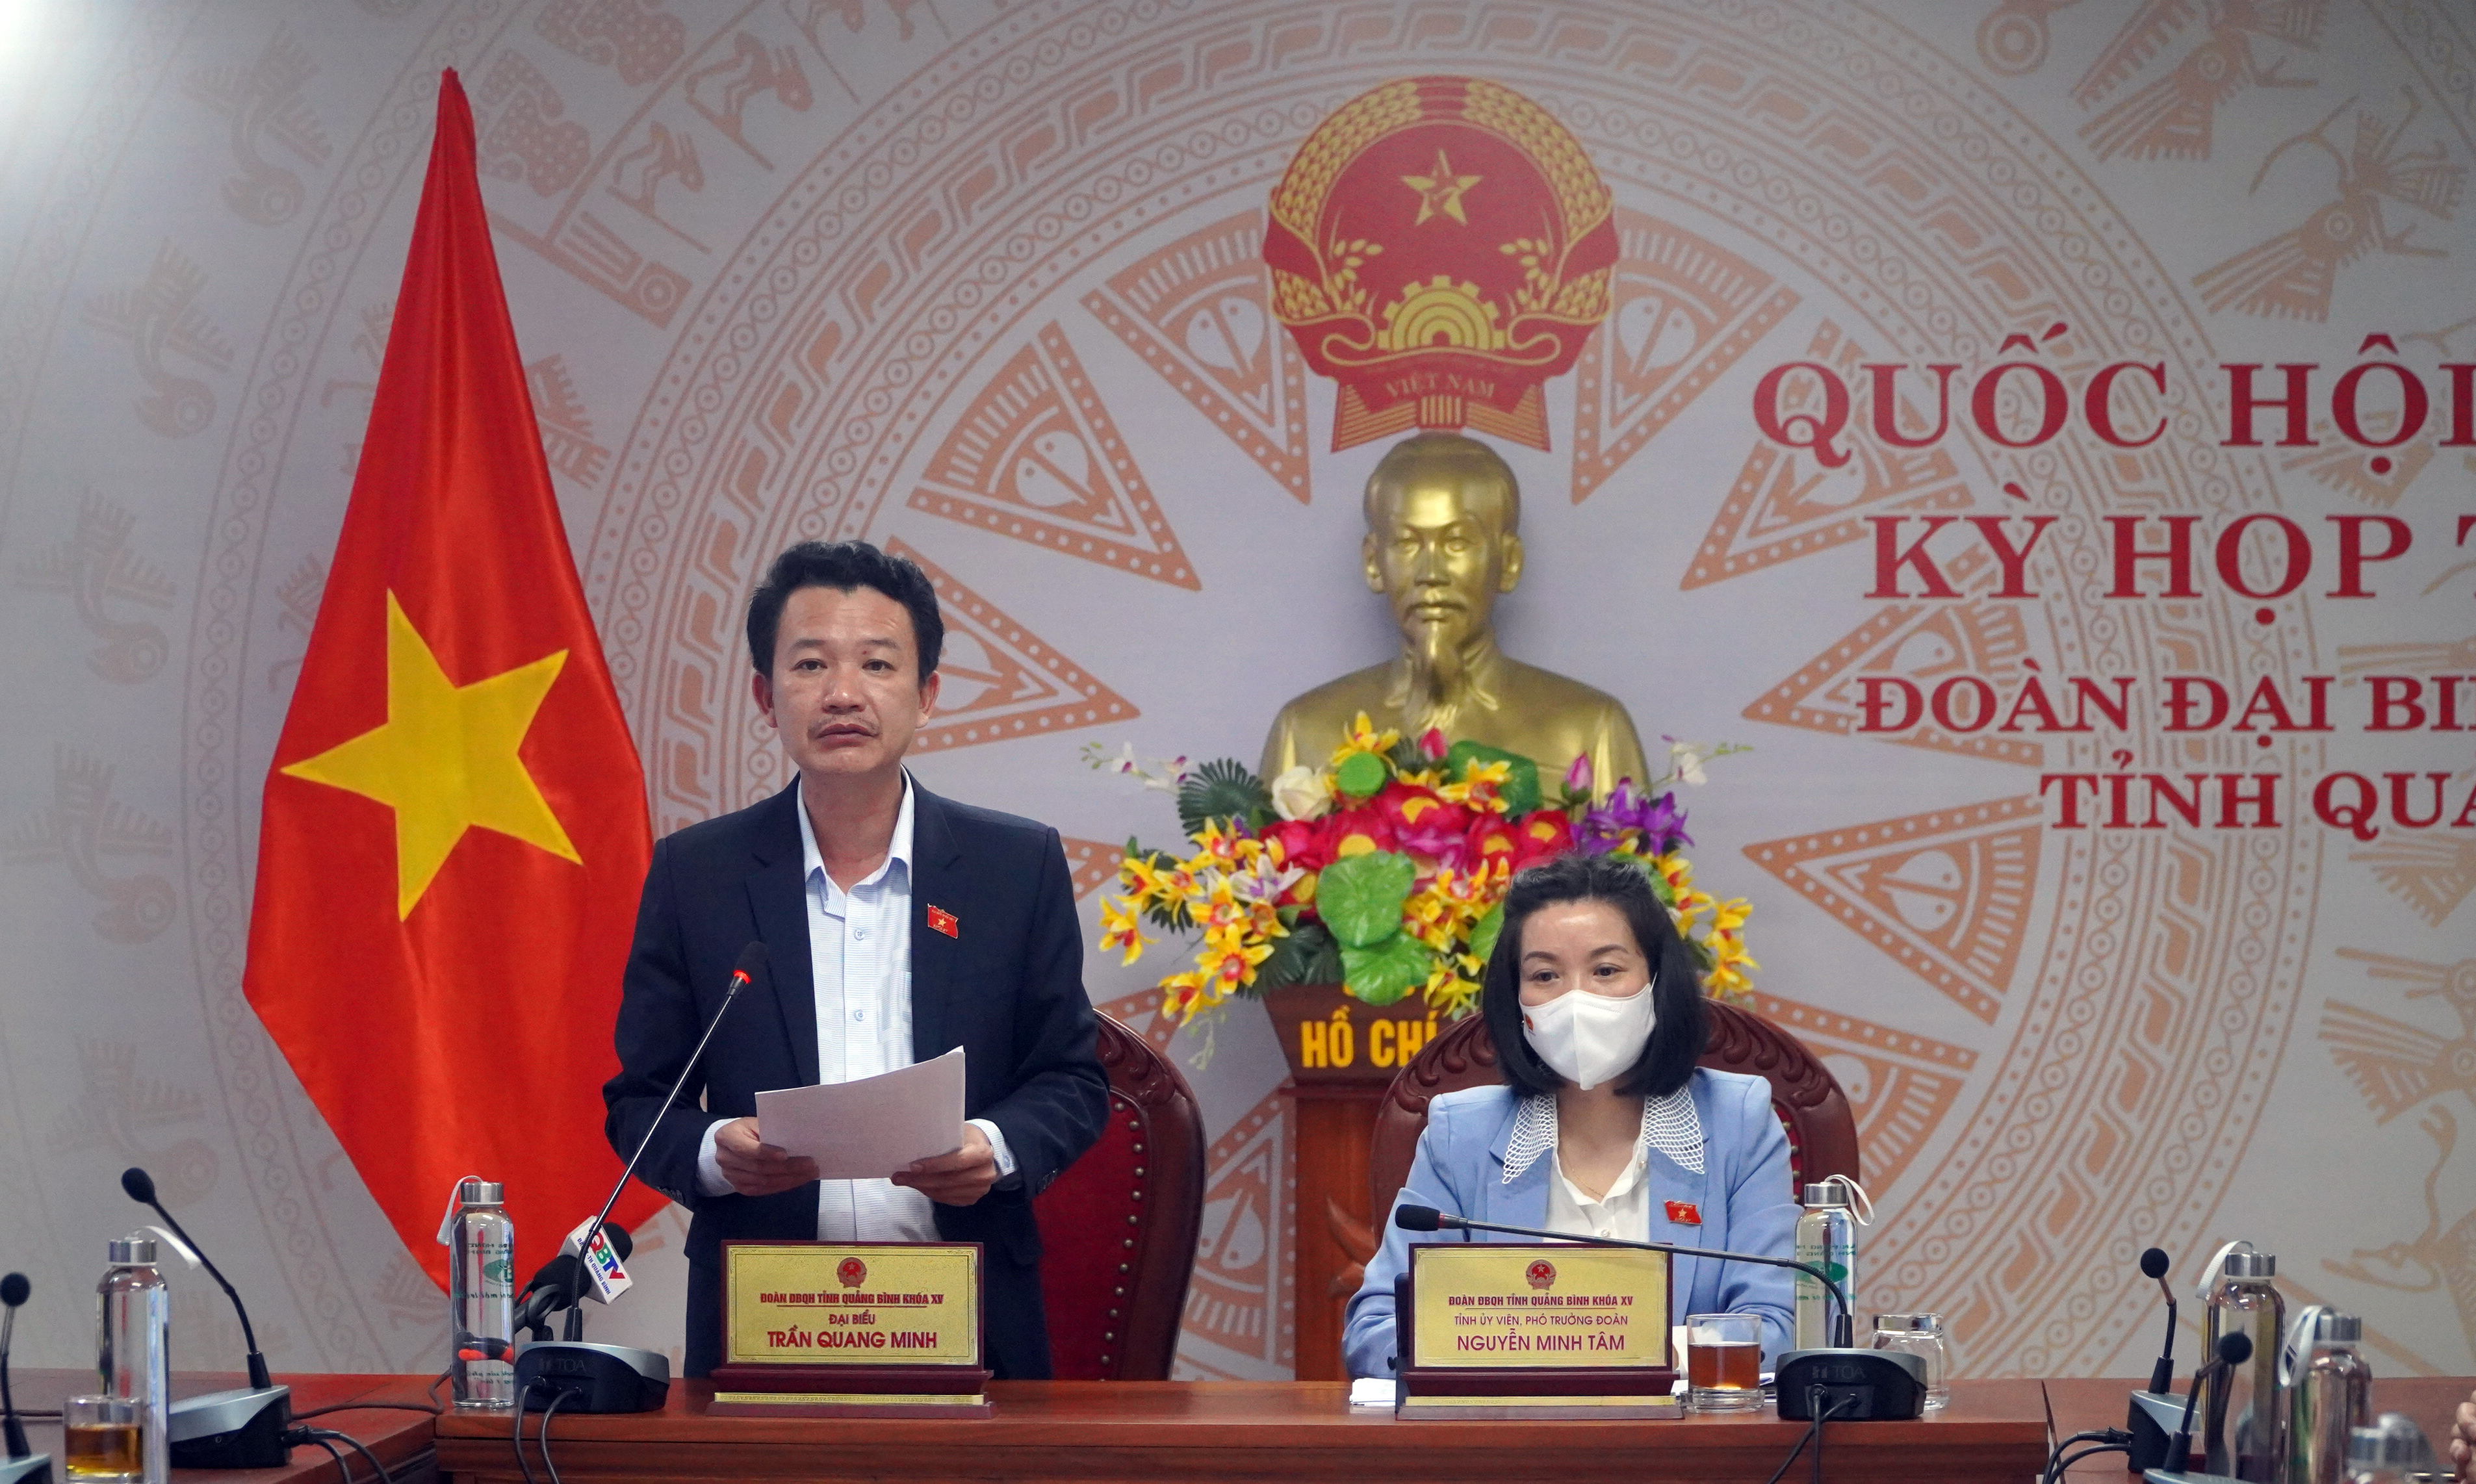 Đại biểu Trần Quang Minh thảo luận trực tuyến về Luật sửa đổi, bổ sung một số điều của Luật Thống kê